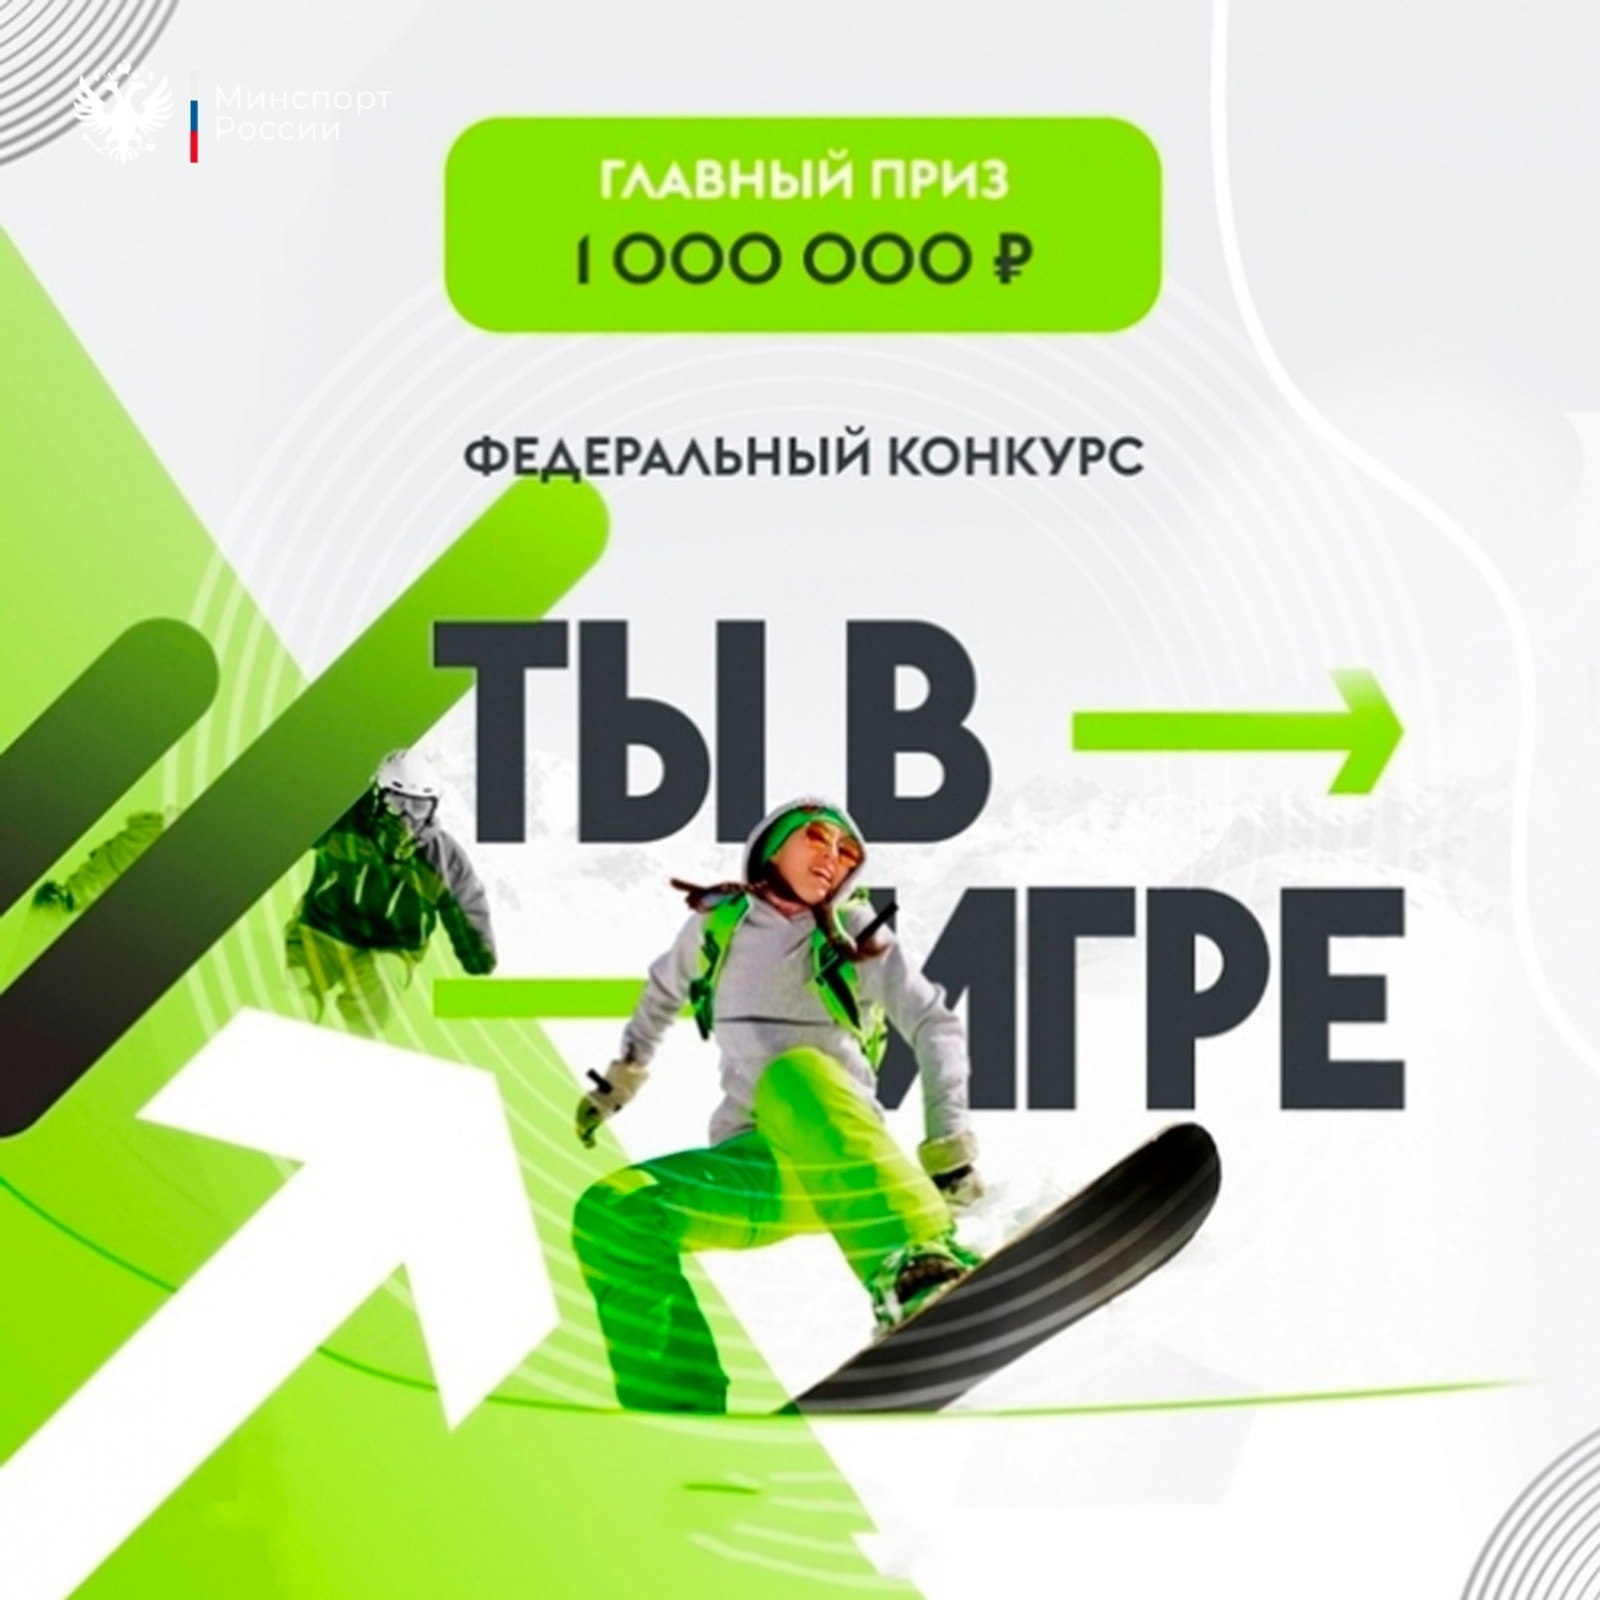 Яҡташыбыҙ  «Һин уйында» бөтә Рәсәй спорт проекттары конкурсында еңде